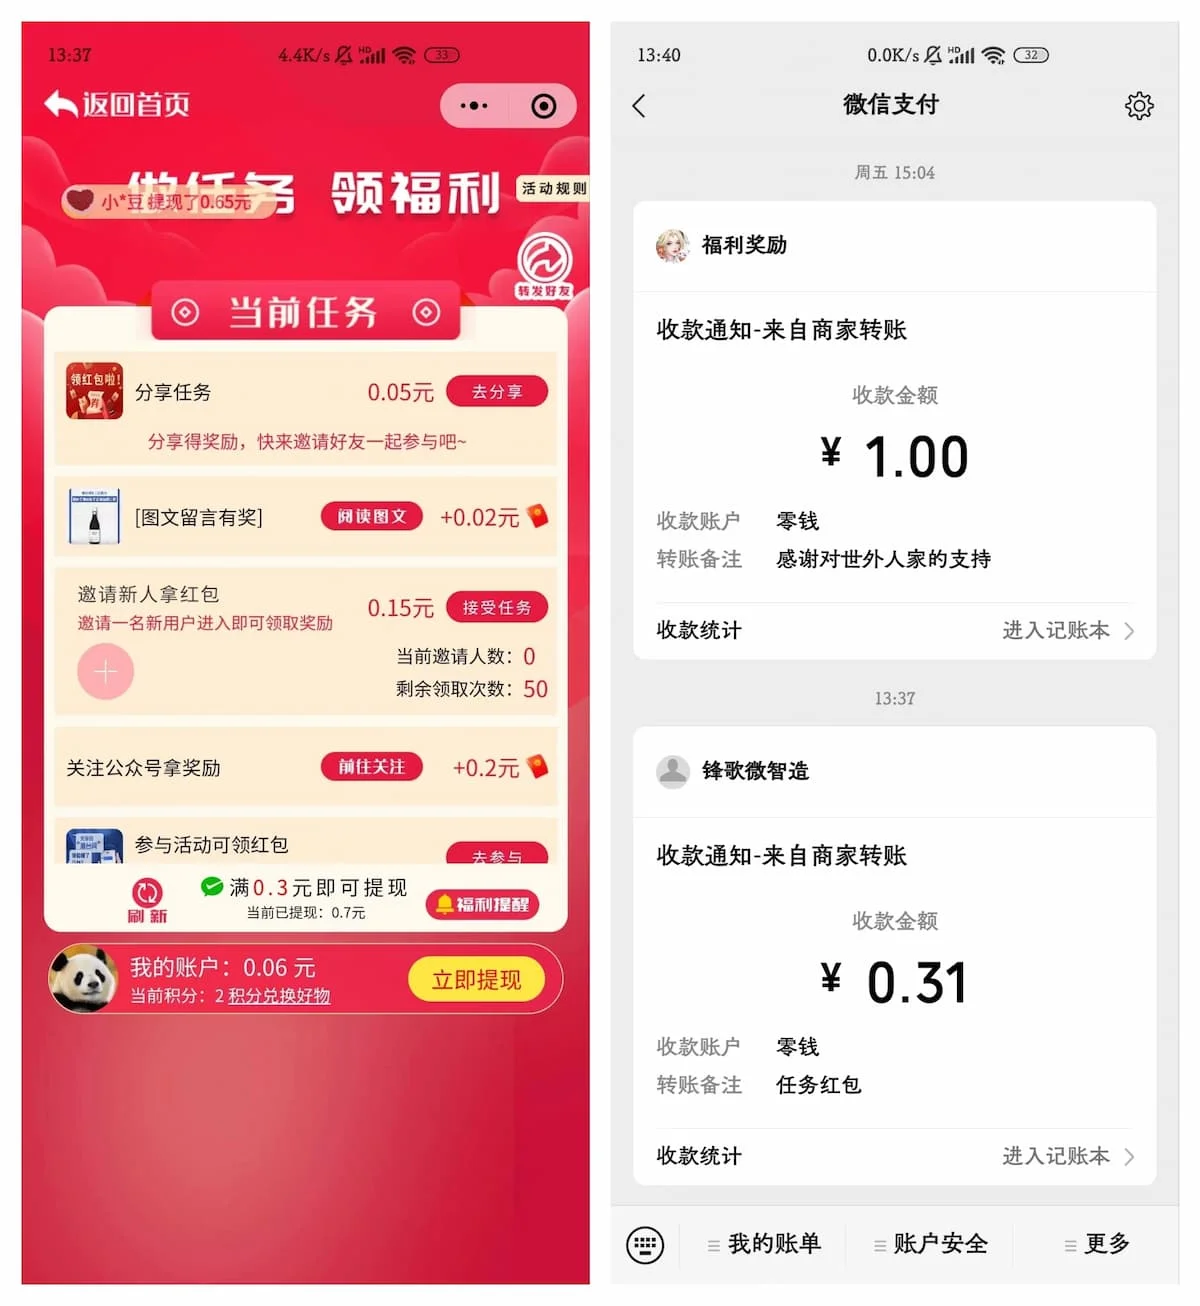 中粮幸荟俱乐部微信小程序简单领0.3元现金红包